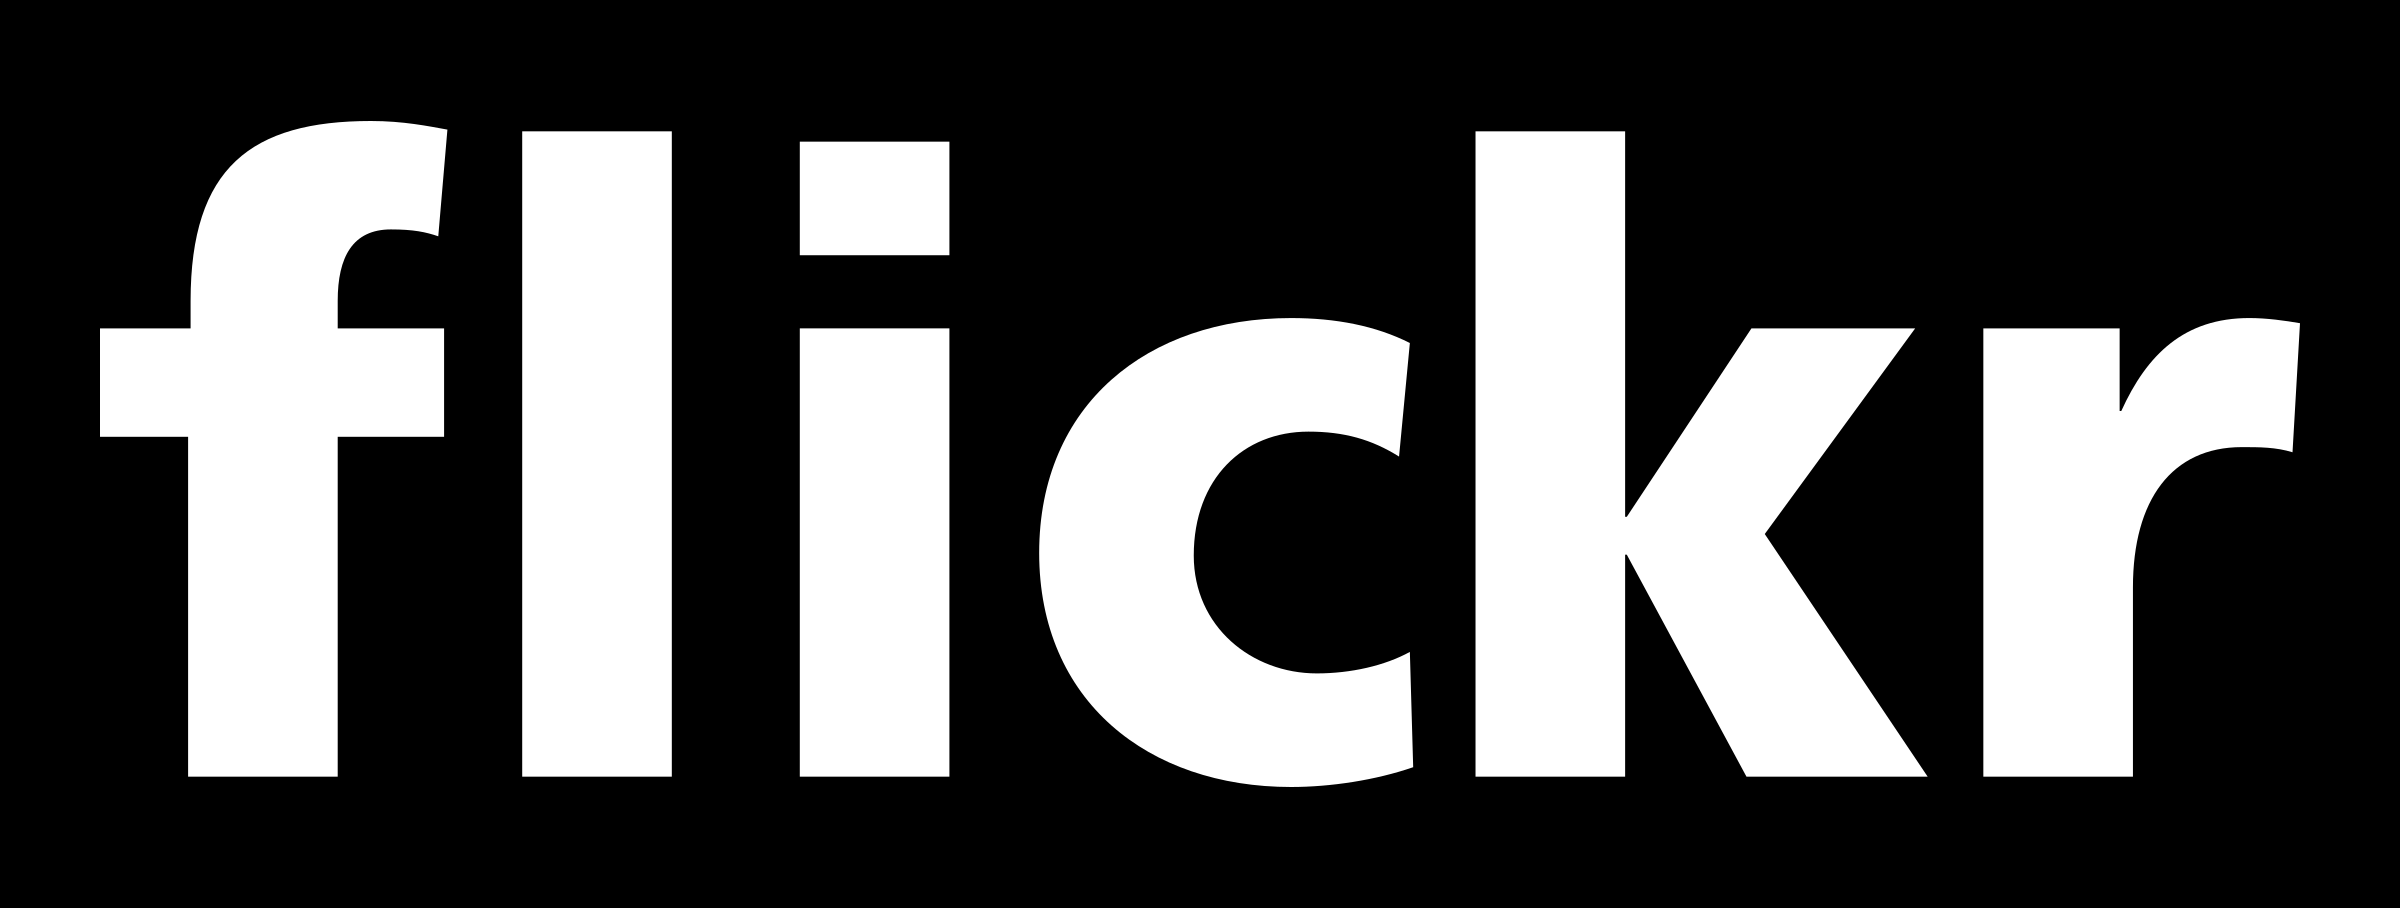 Flickr Logo - Flickr Logo PNG Transparent & SVG Vector - Freebie Supply